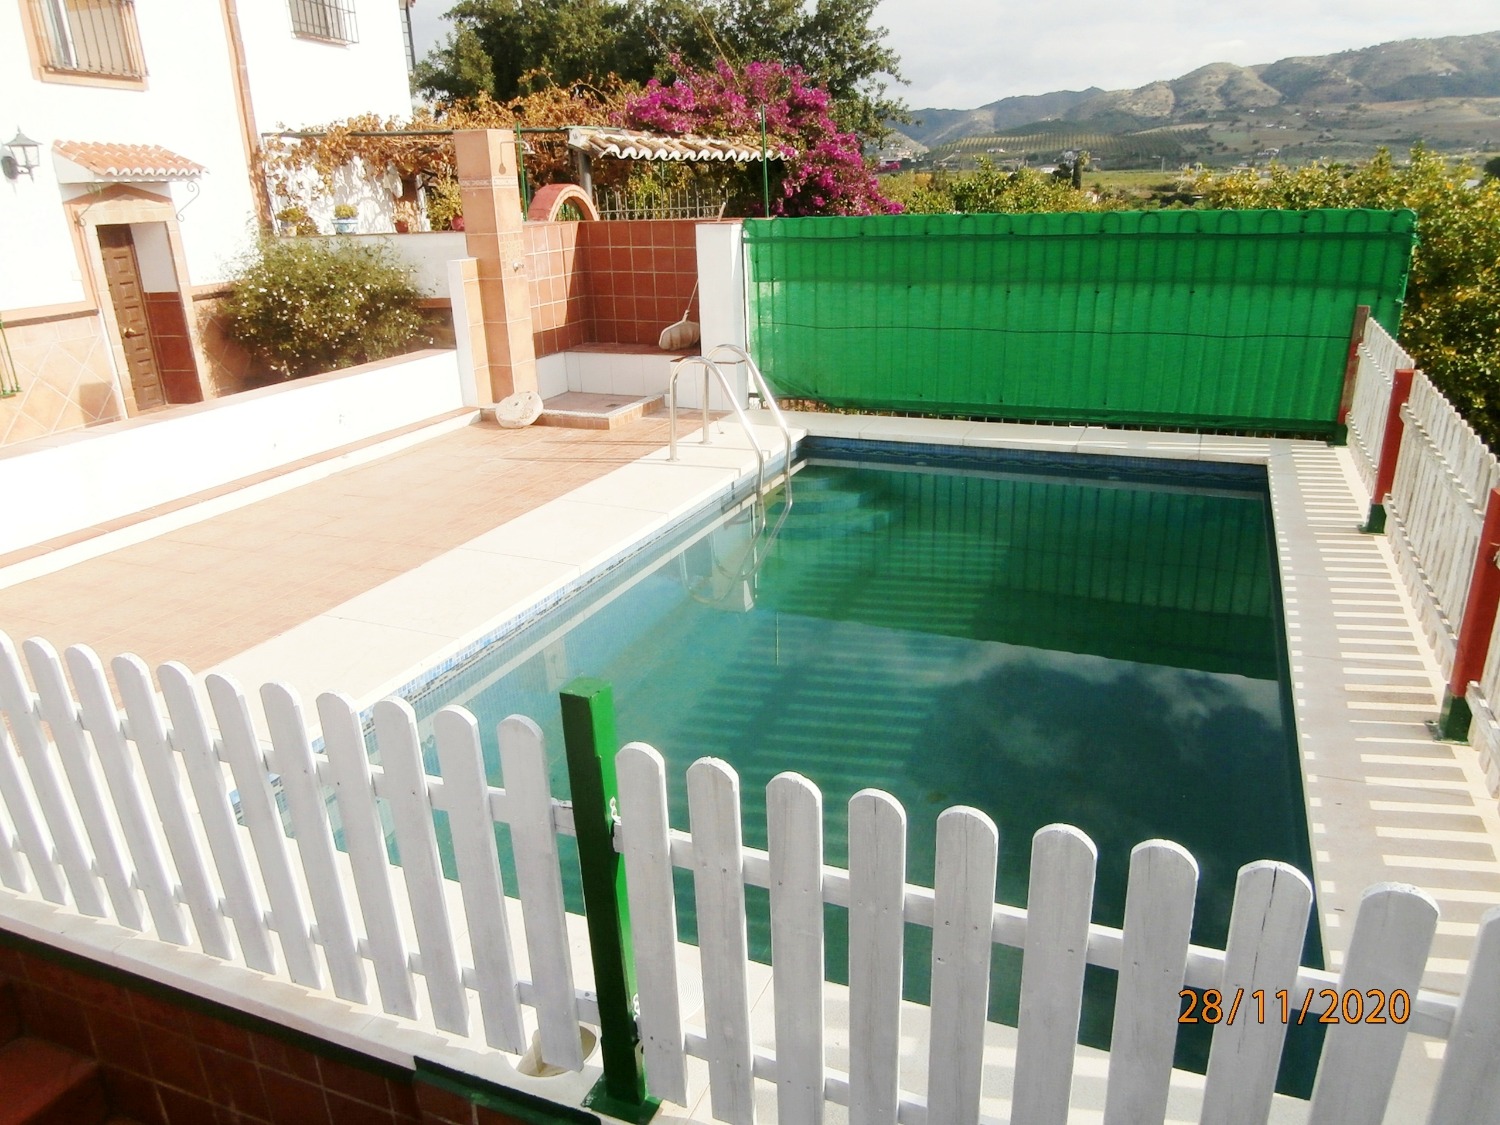 Stort dobbelthus i andalusisk stil med pool, agerjord, fuldt indhegnet ca. 3.220 m2, god adgang.